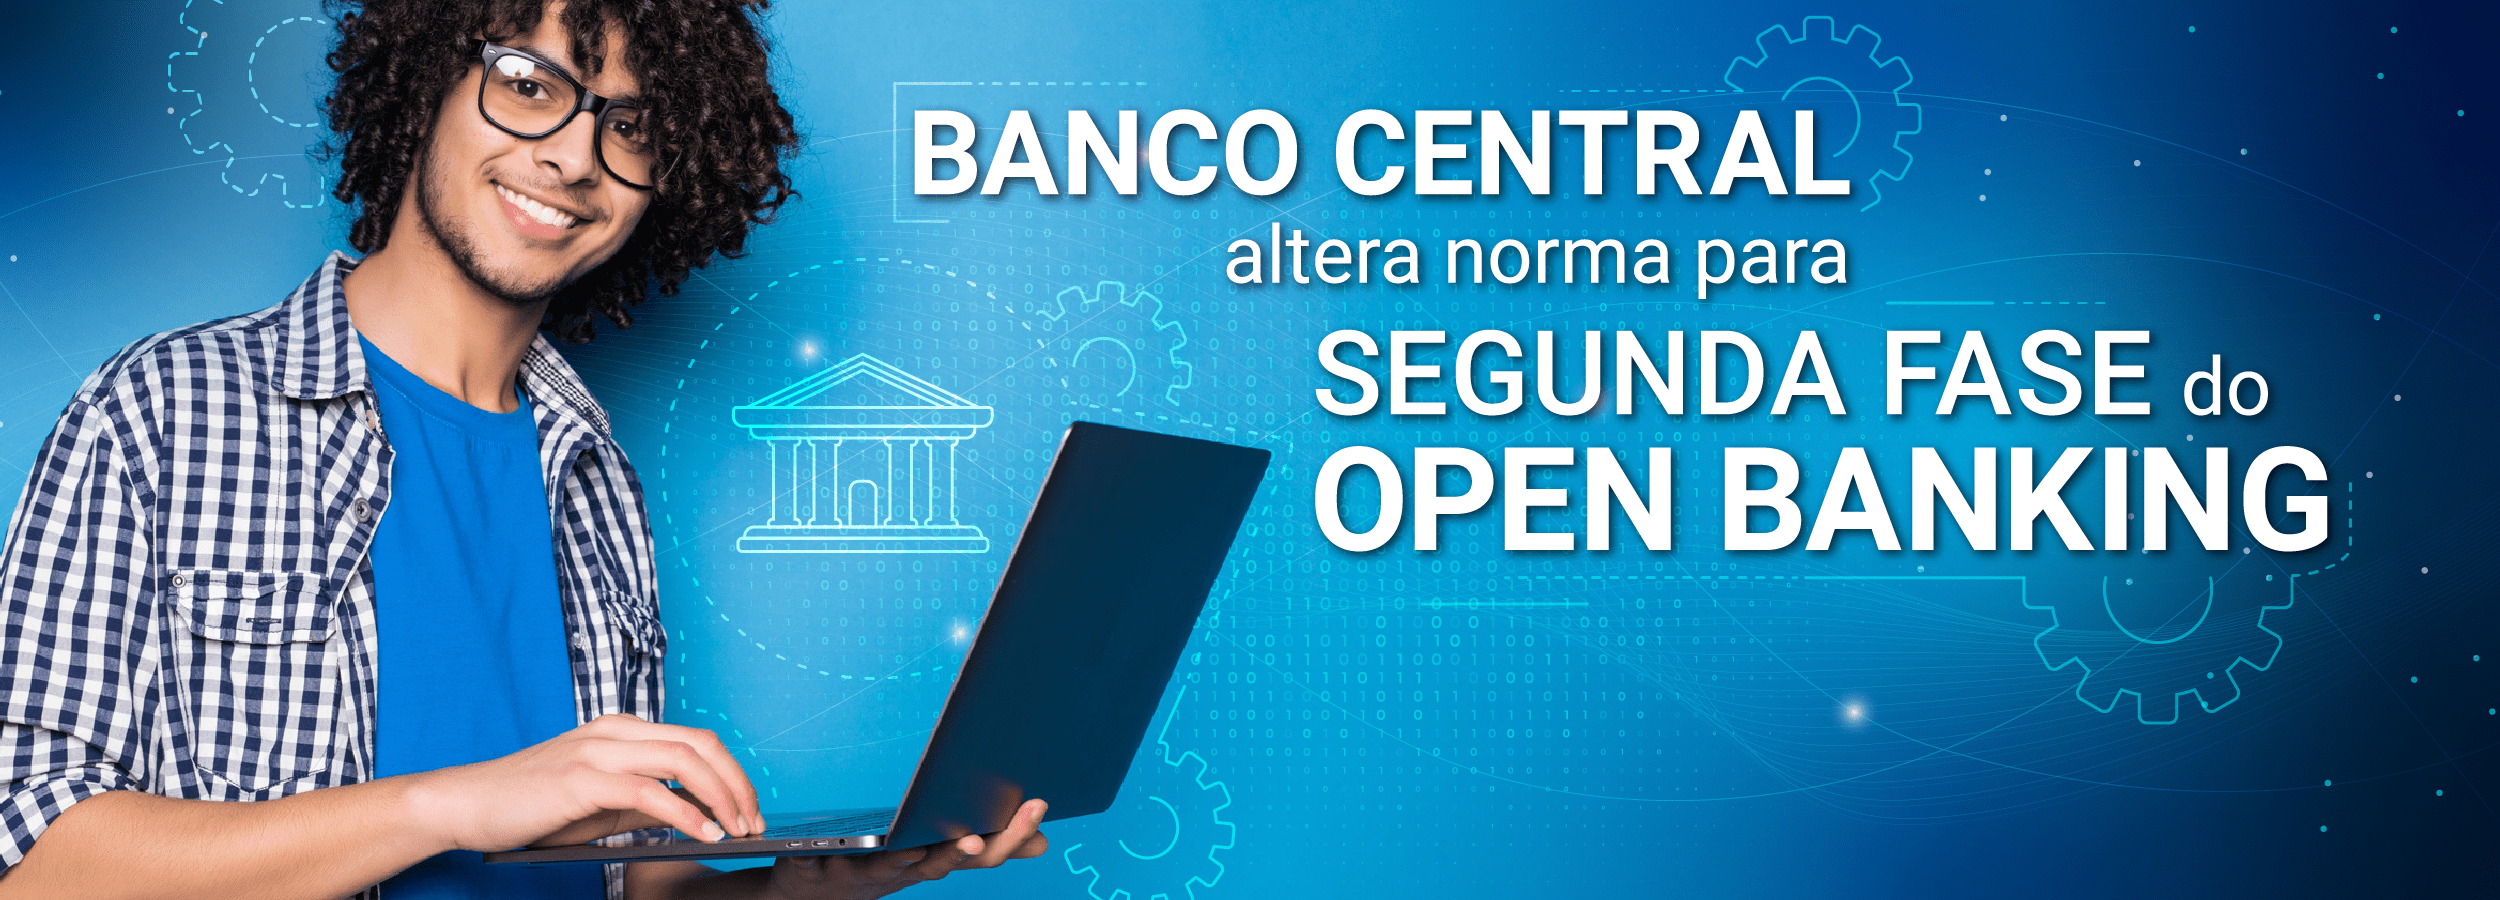 anco Central altera norma para segunda fase do Open Banking